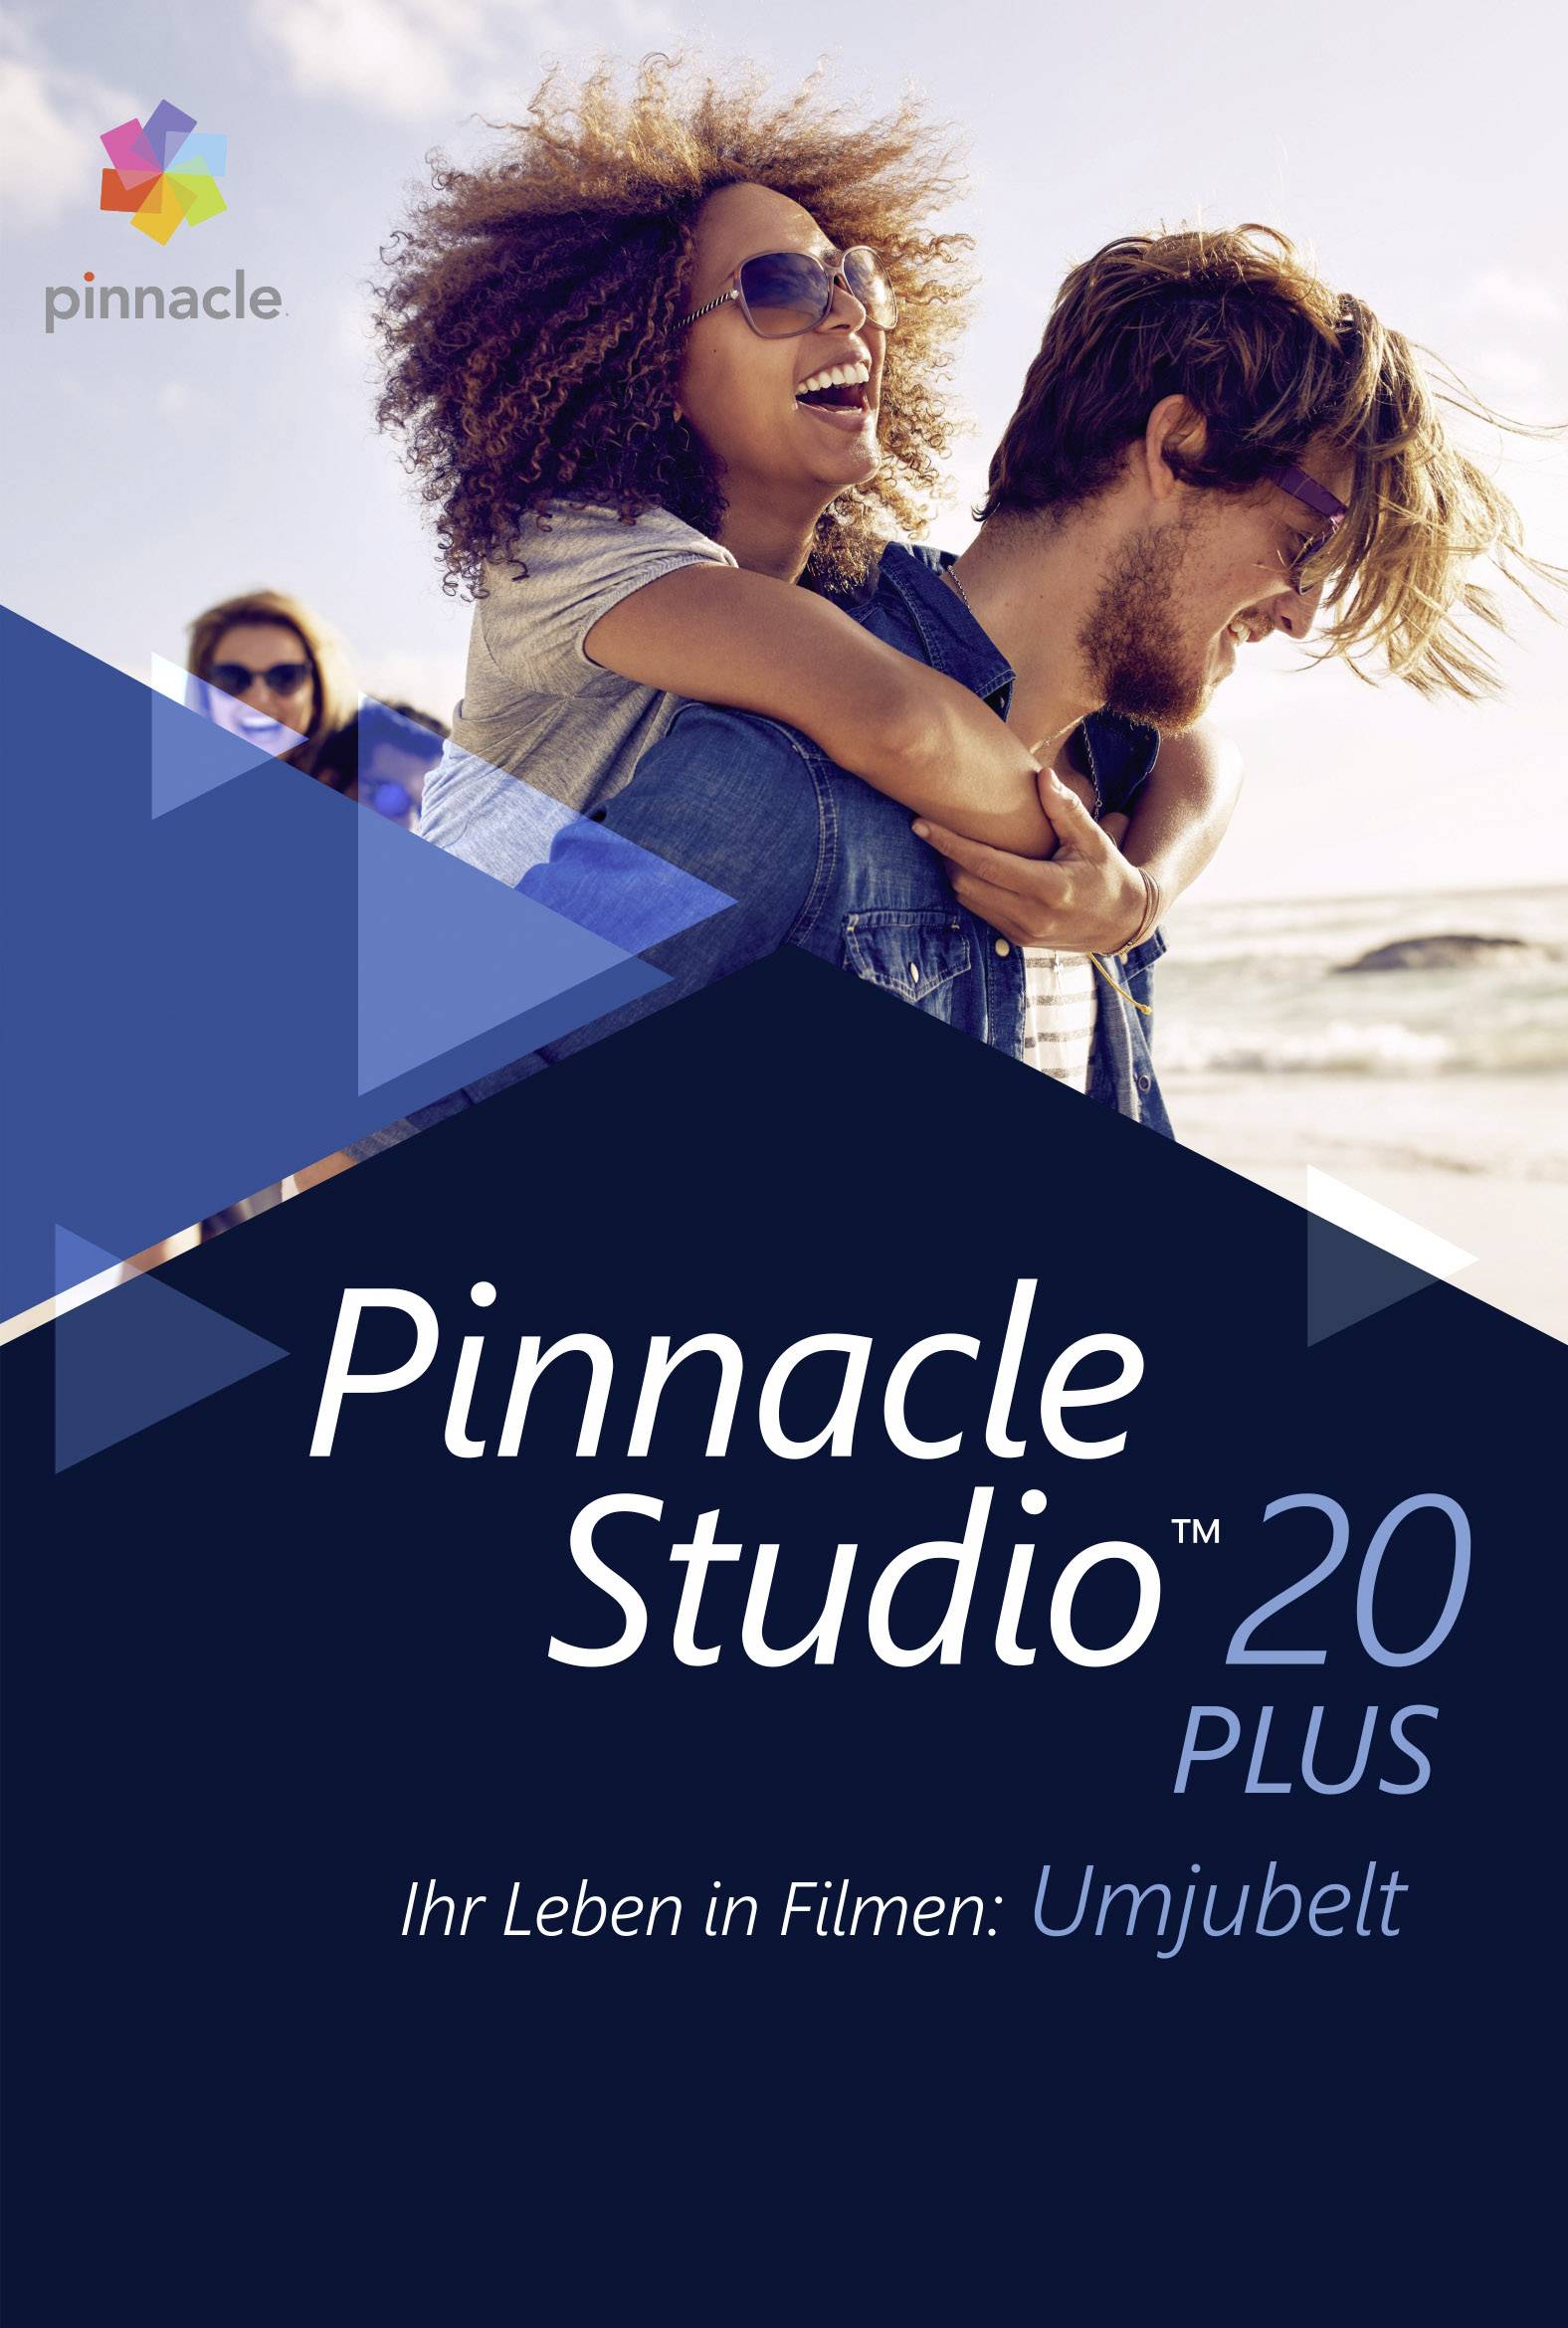 pinnacle studio 20 reviews